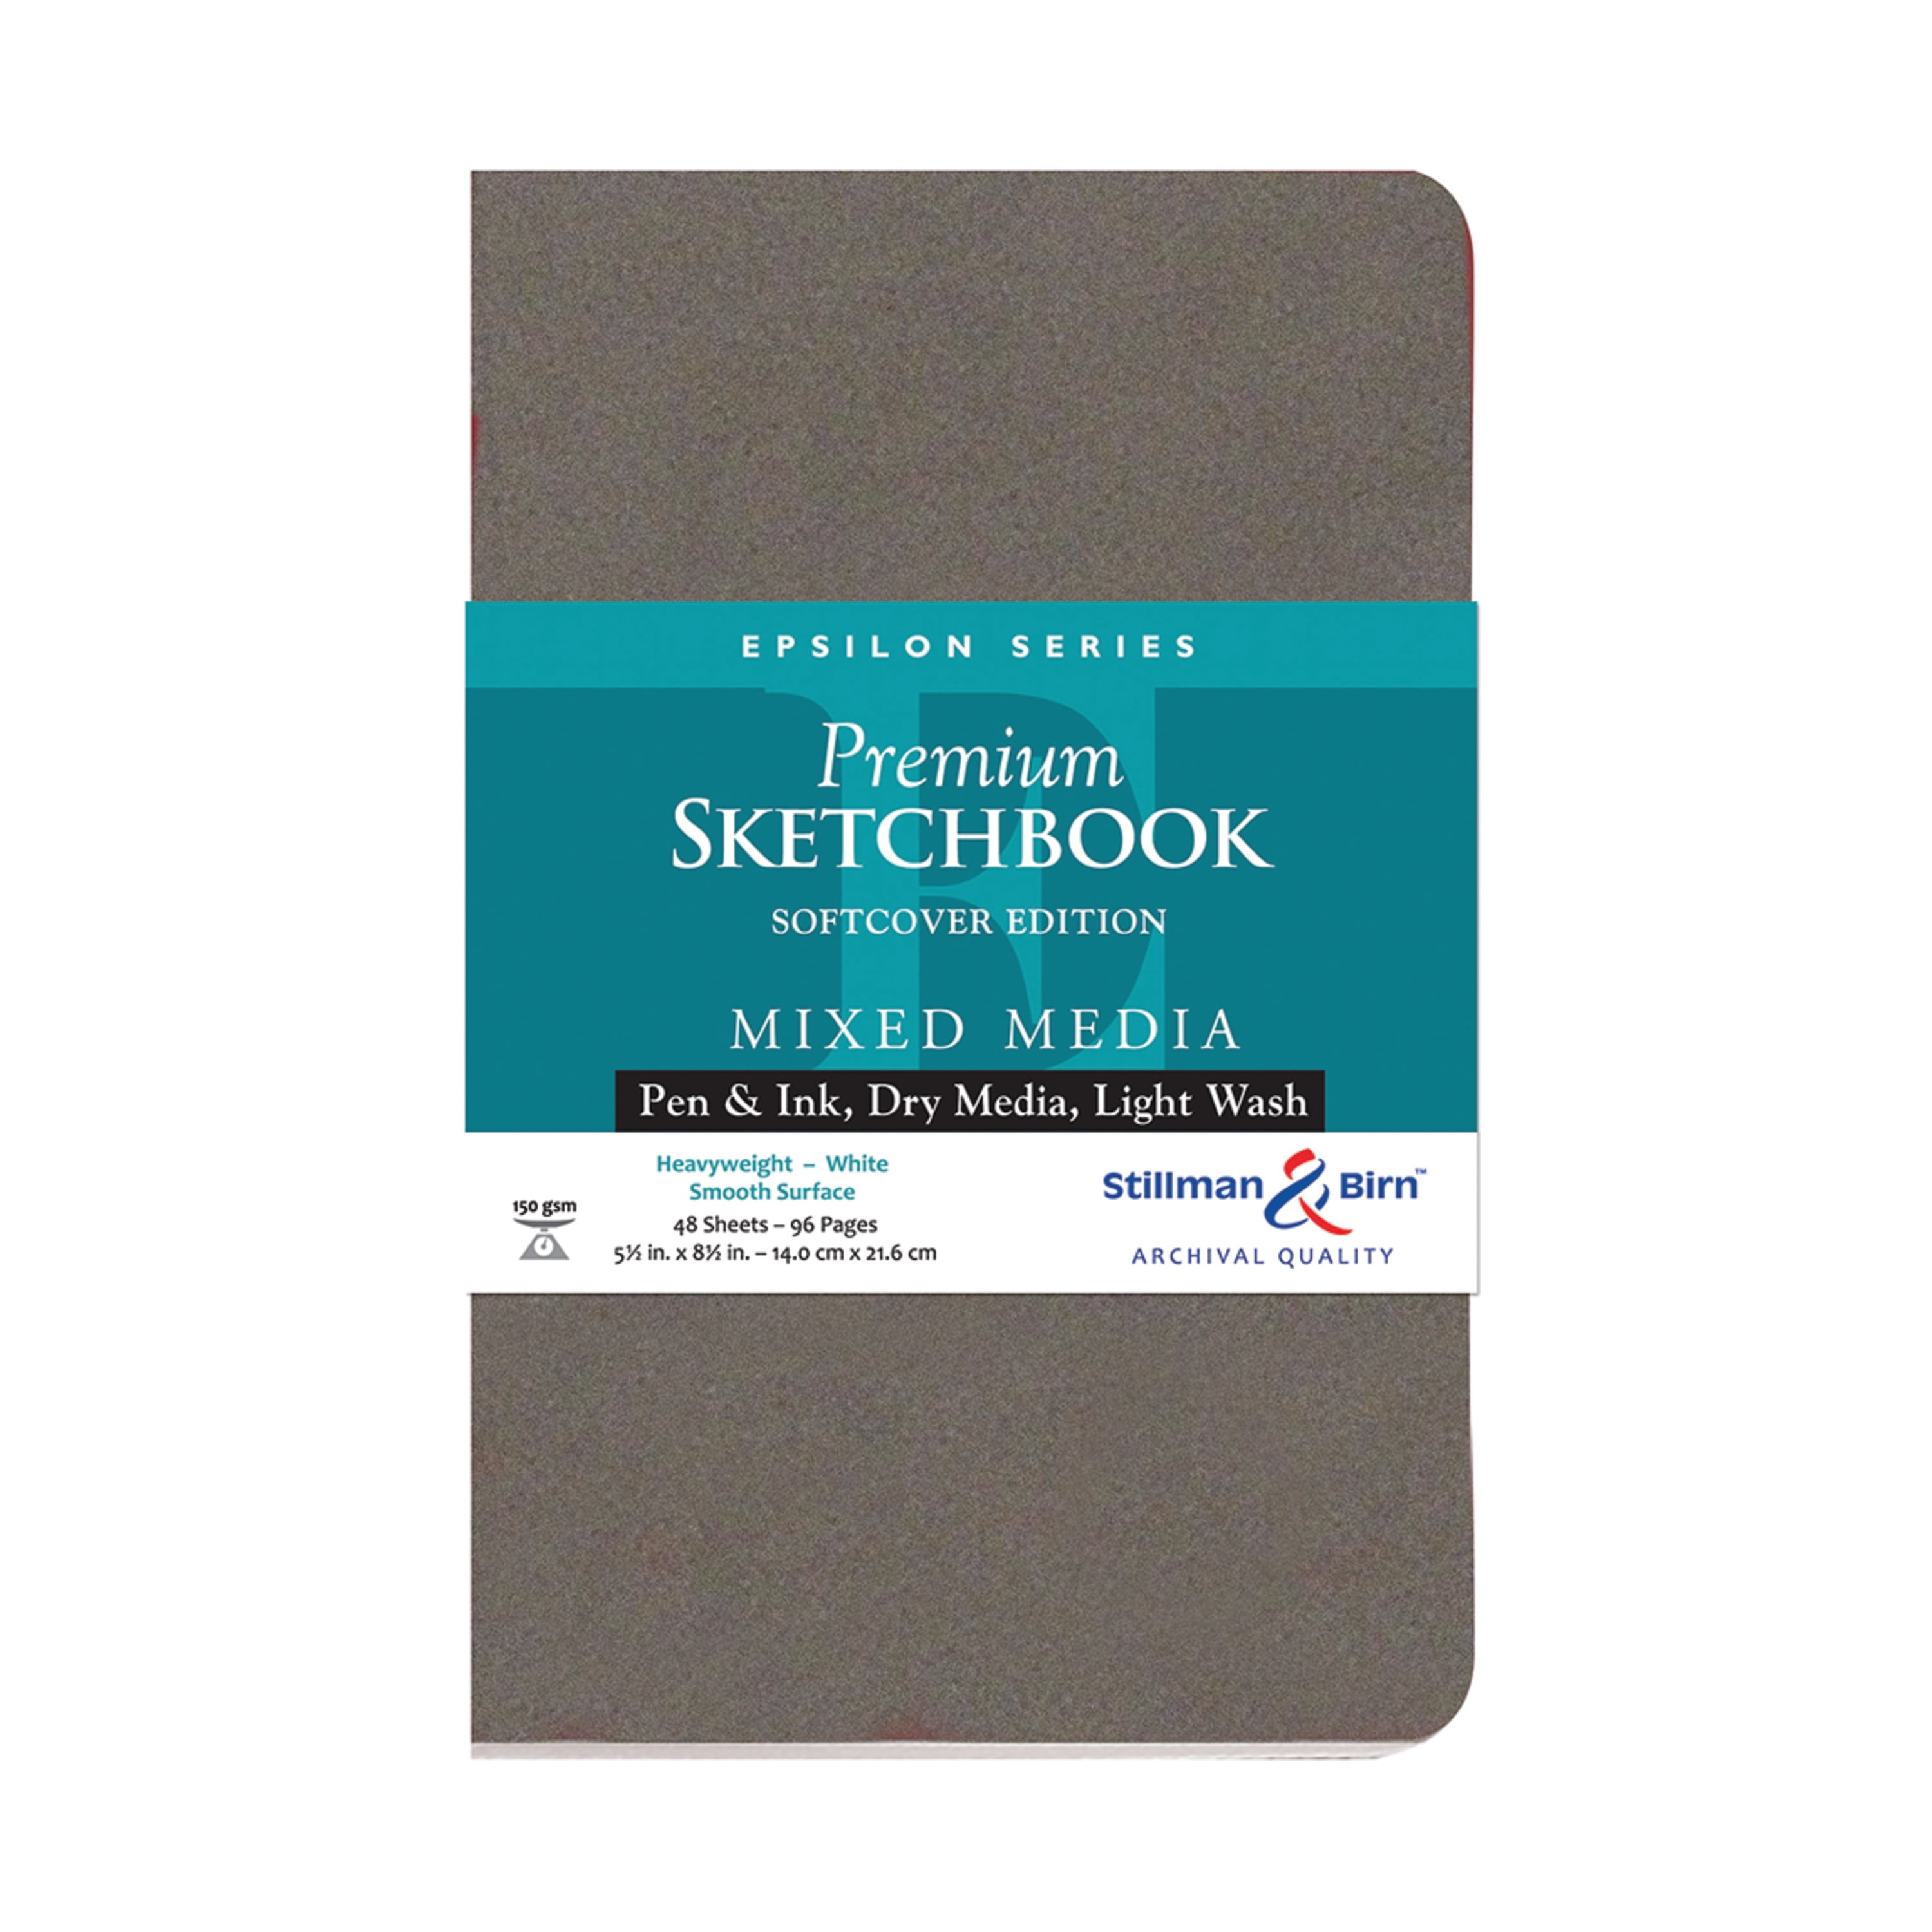 Heavyweight 8.5 x 5.5 White Paper Stillman & Birn Alpha Series Softcover Sketchbook Medium Grain Surface 150 GSM 